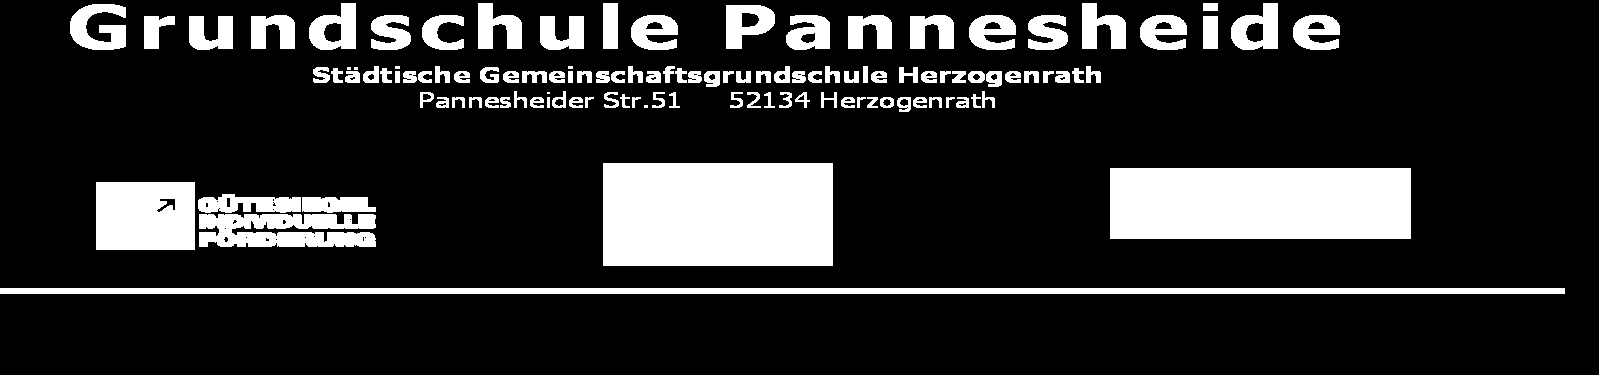 Zeugnis Seite 8 GS Pannesheide Name: Klasse 4 Fehlzeiten im 1. Hj.